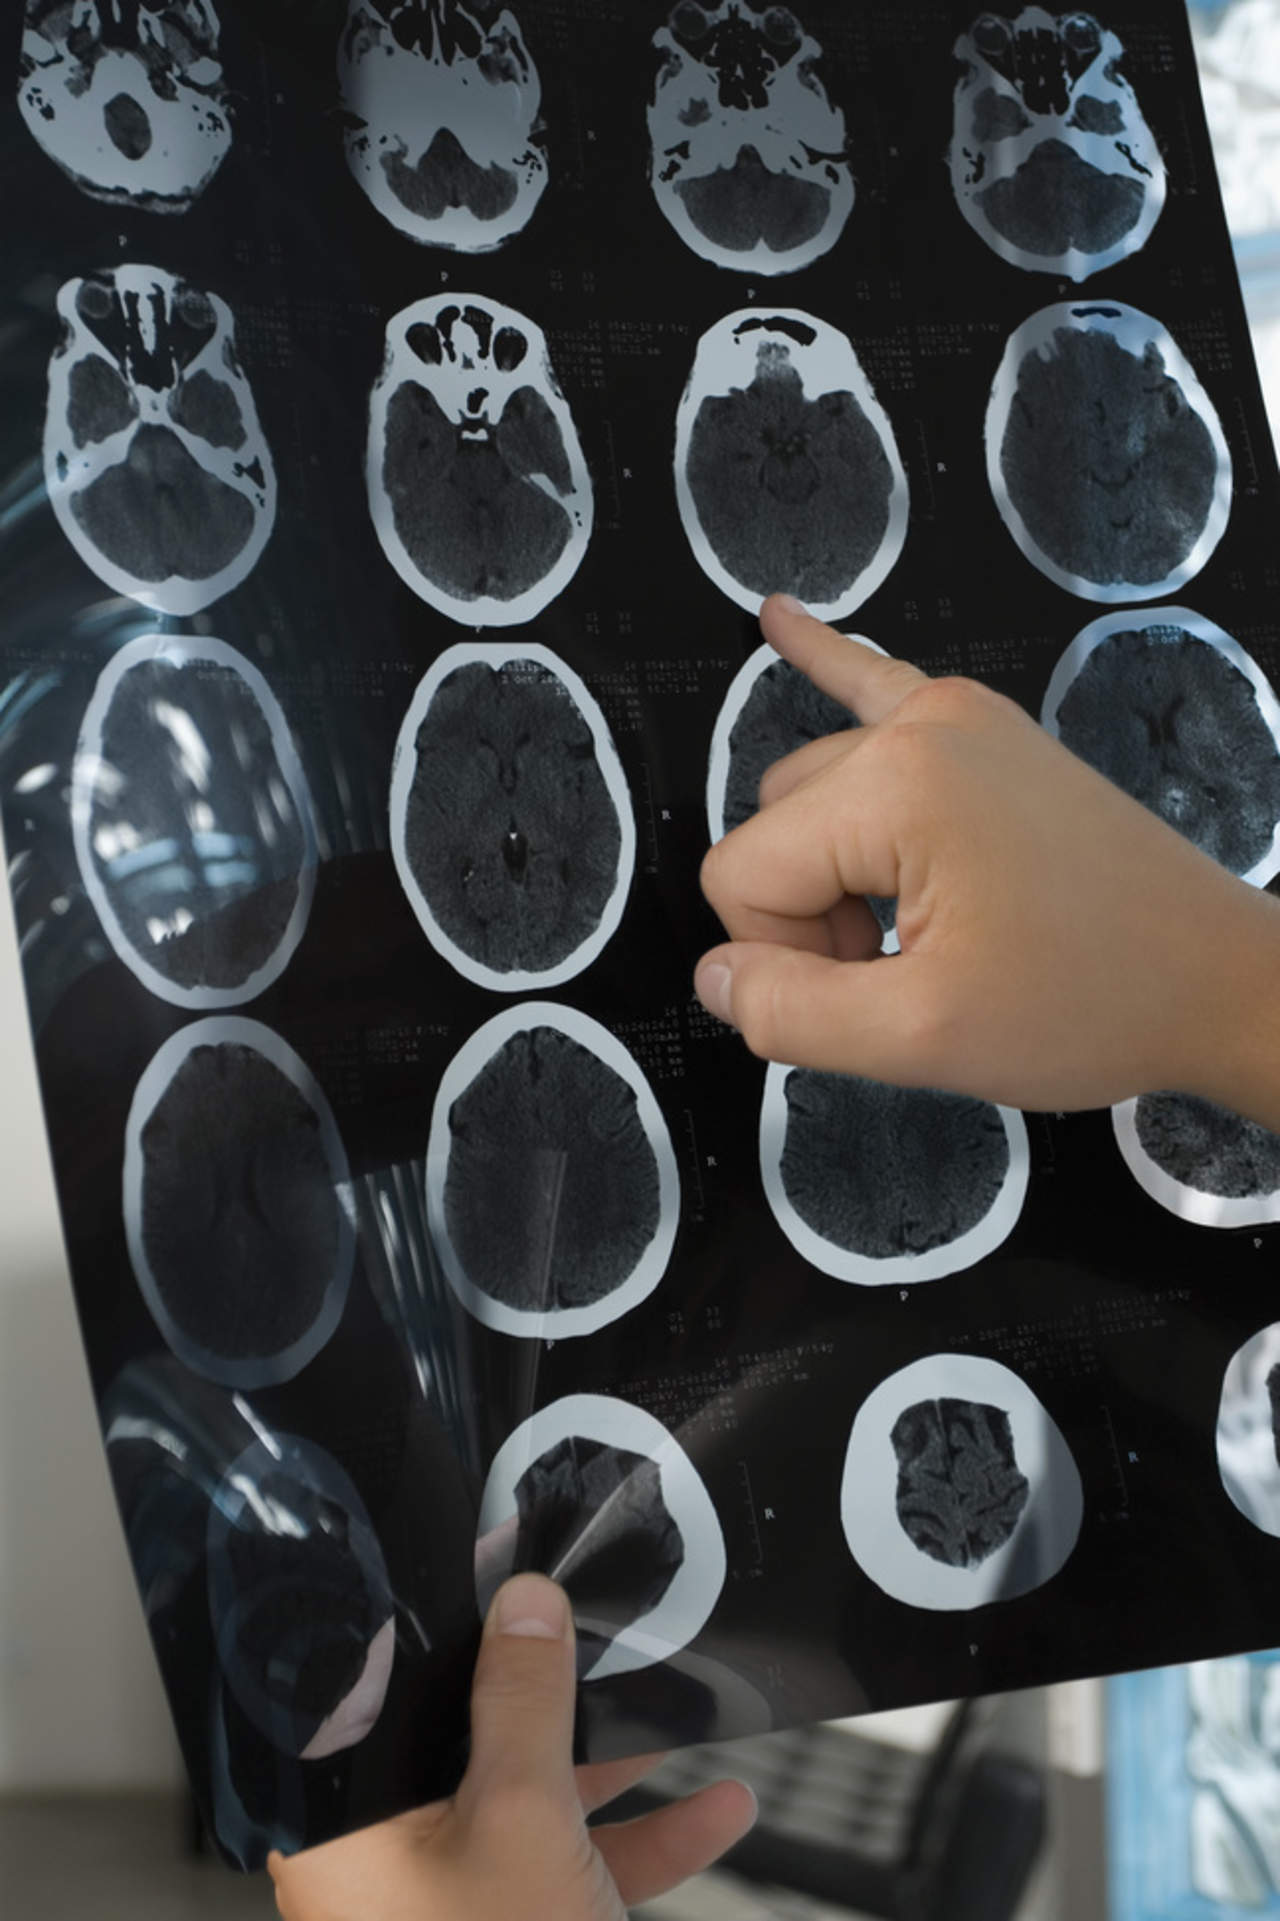 Hallan alteraciones cerebrales en personas sanas propensas al Alzheimer